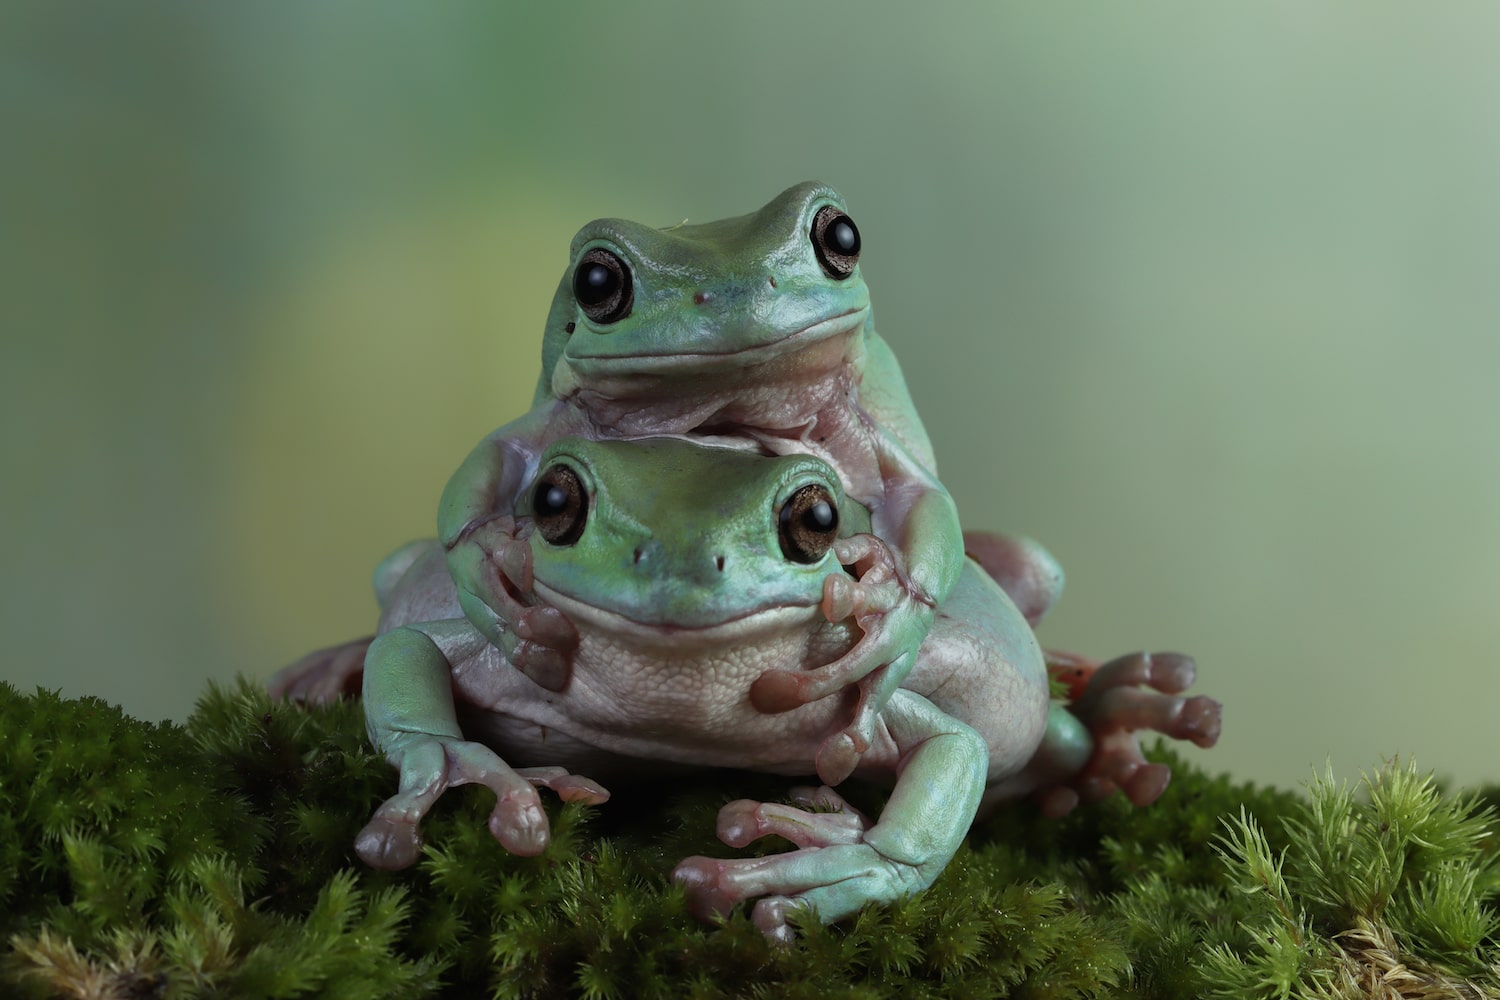 Ohio Birds and Biodiversity: Wood Frog